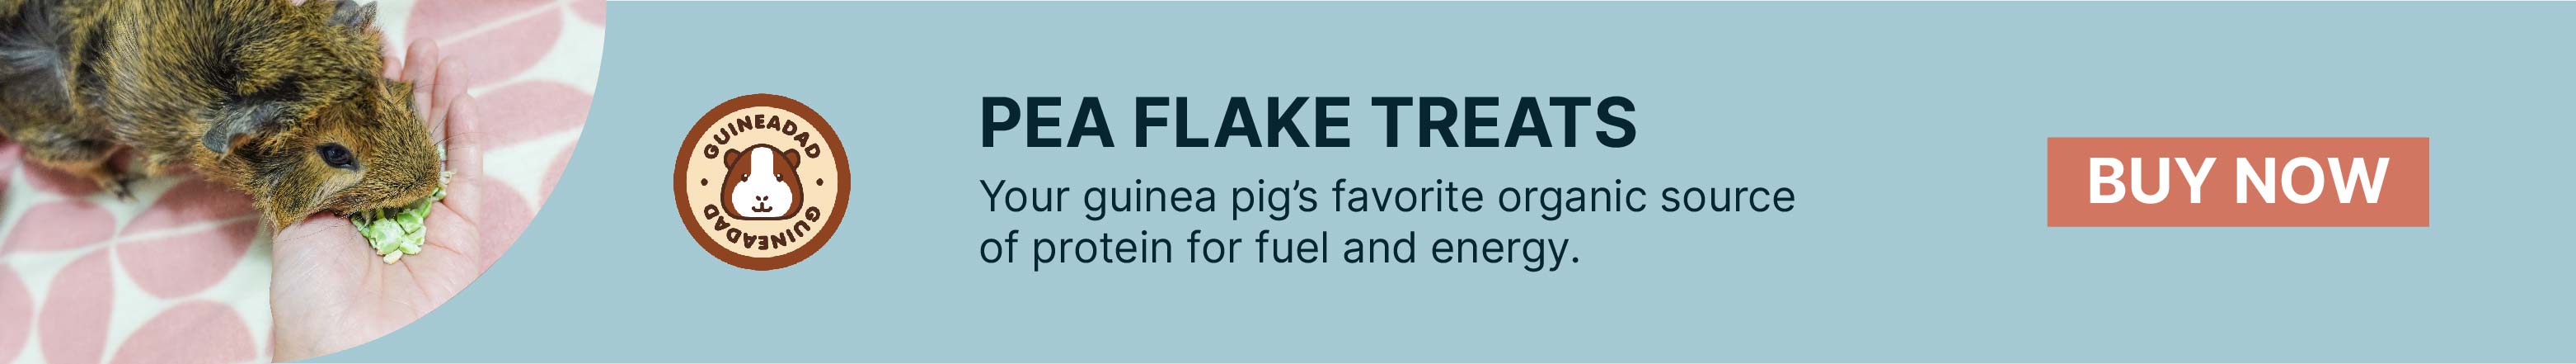 guineadad pea flake treats for guinea pigs